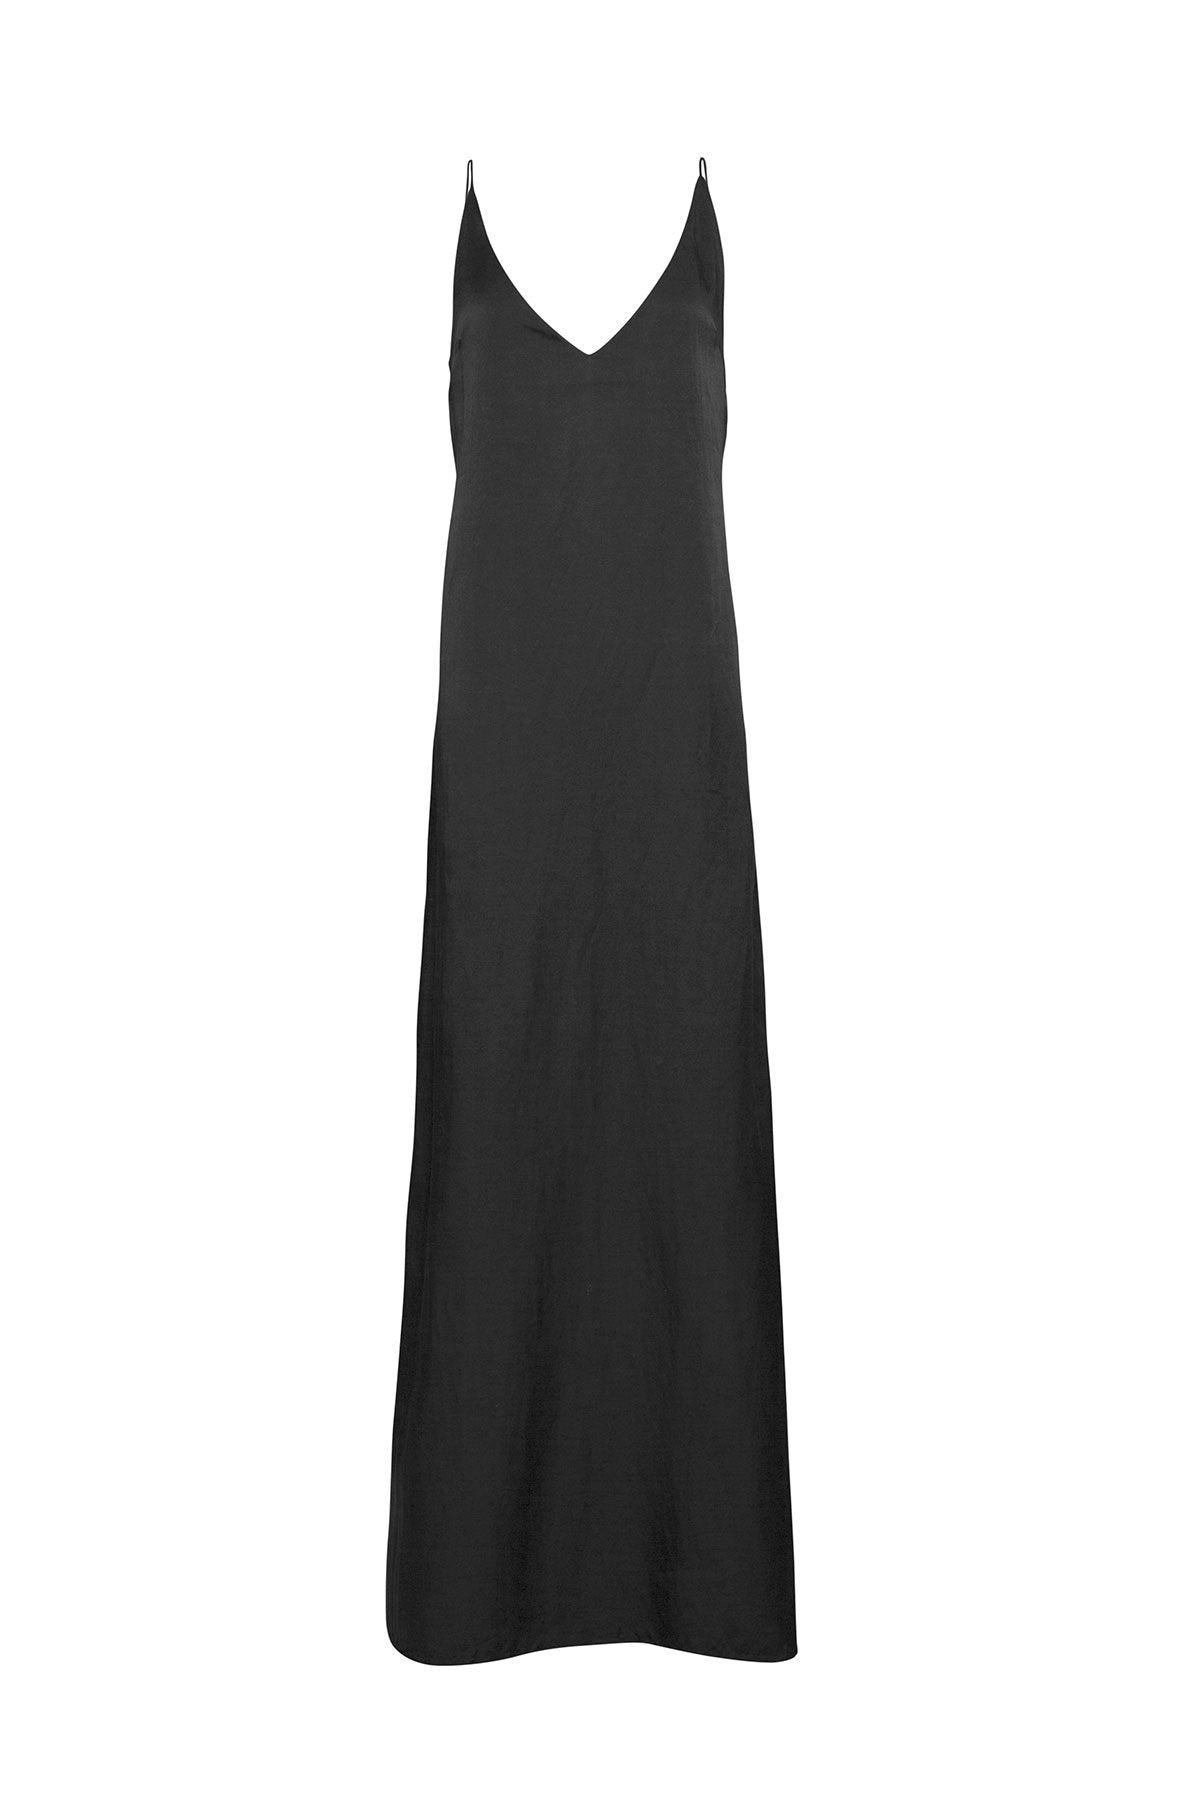 The Klimt Full Length Dress - Ebony - LOOMES